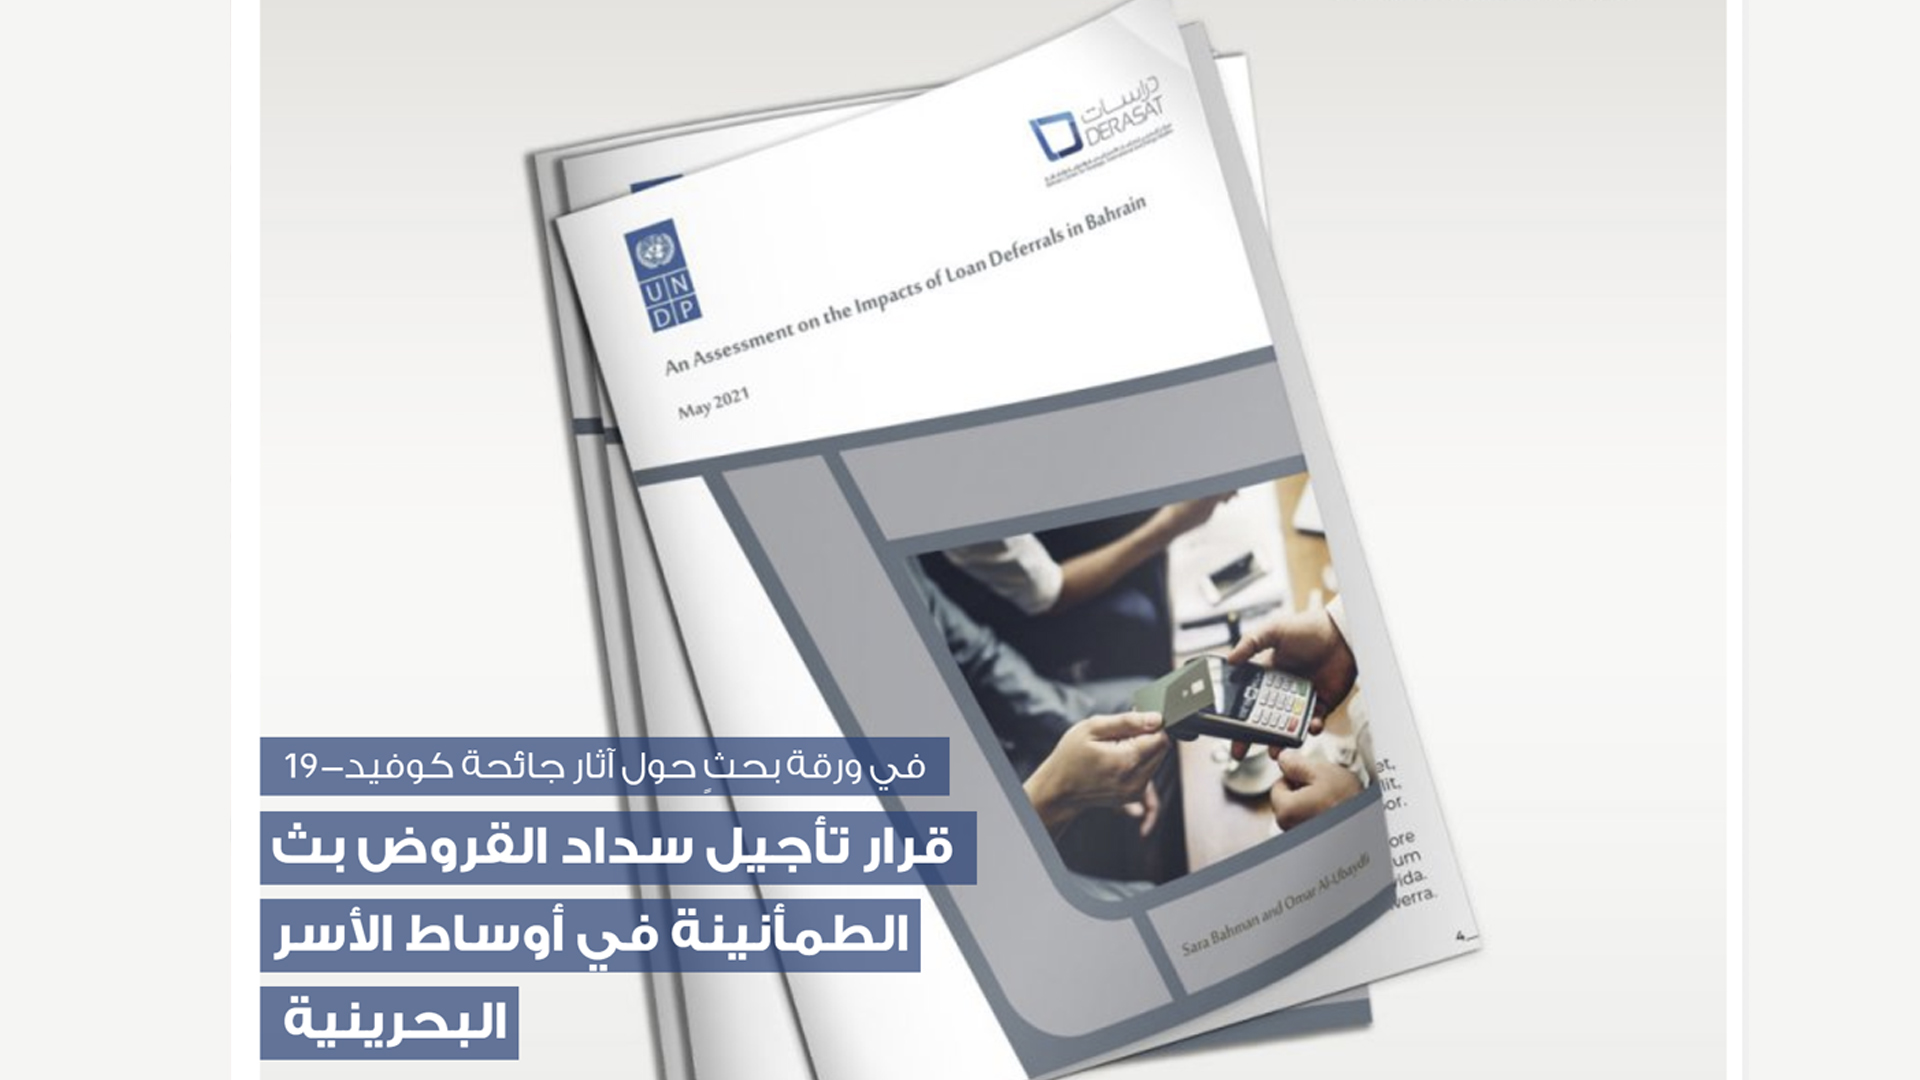 قرار تأجيل سداد القروض بث الطمأنينة في أوساط الأسر البحرينية